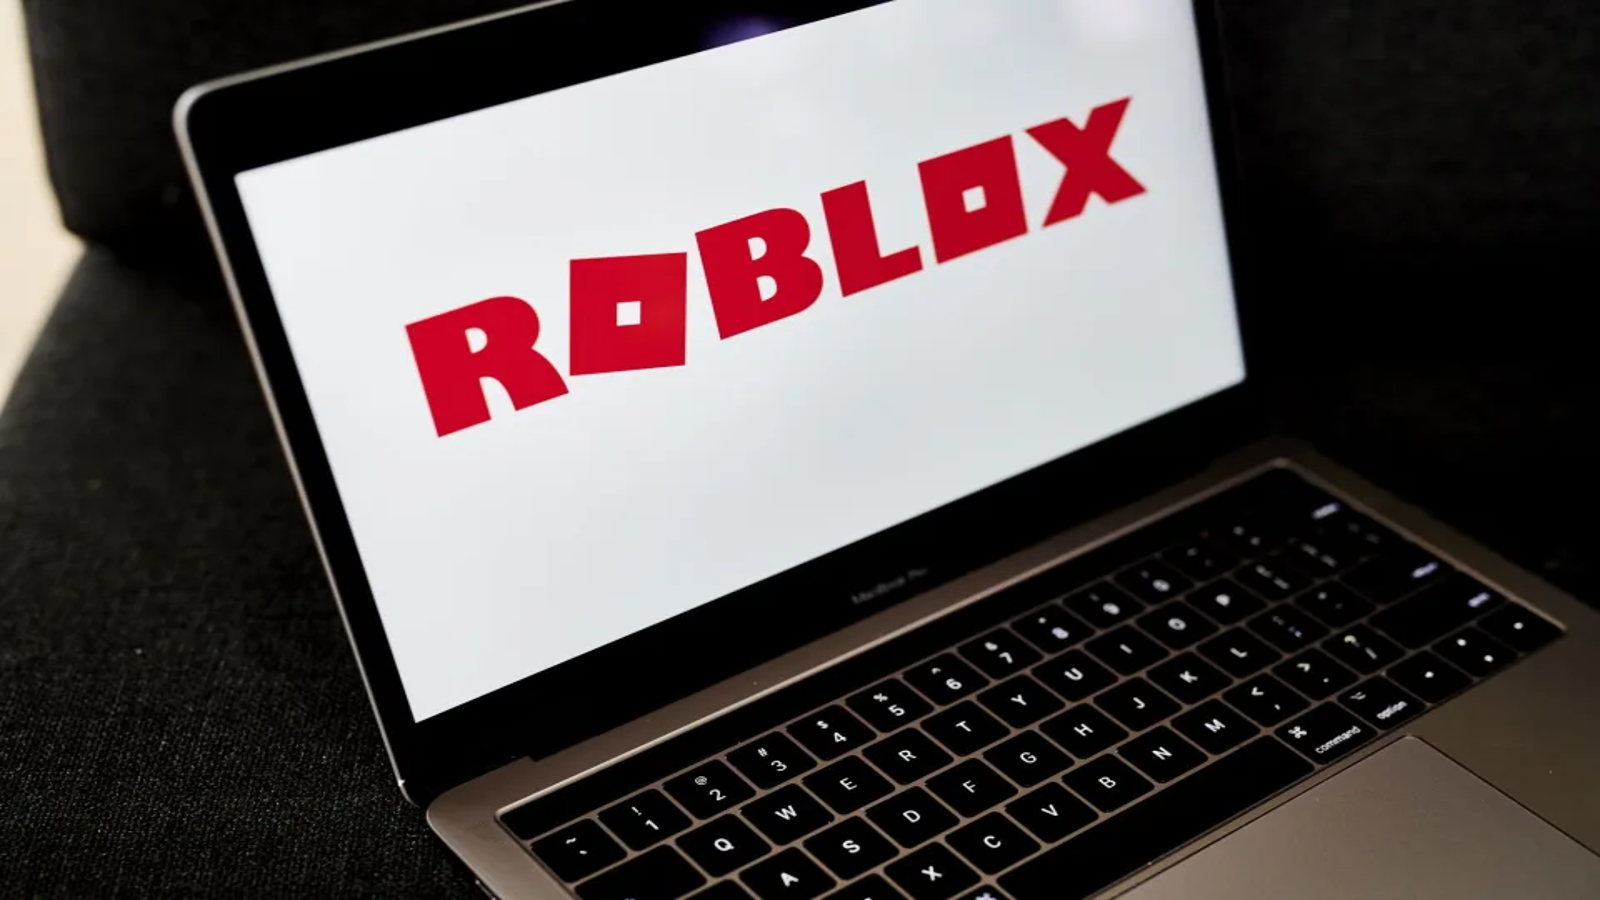 Roblox estreia na bolsa com altíssima valorização